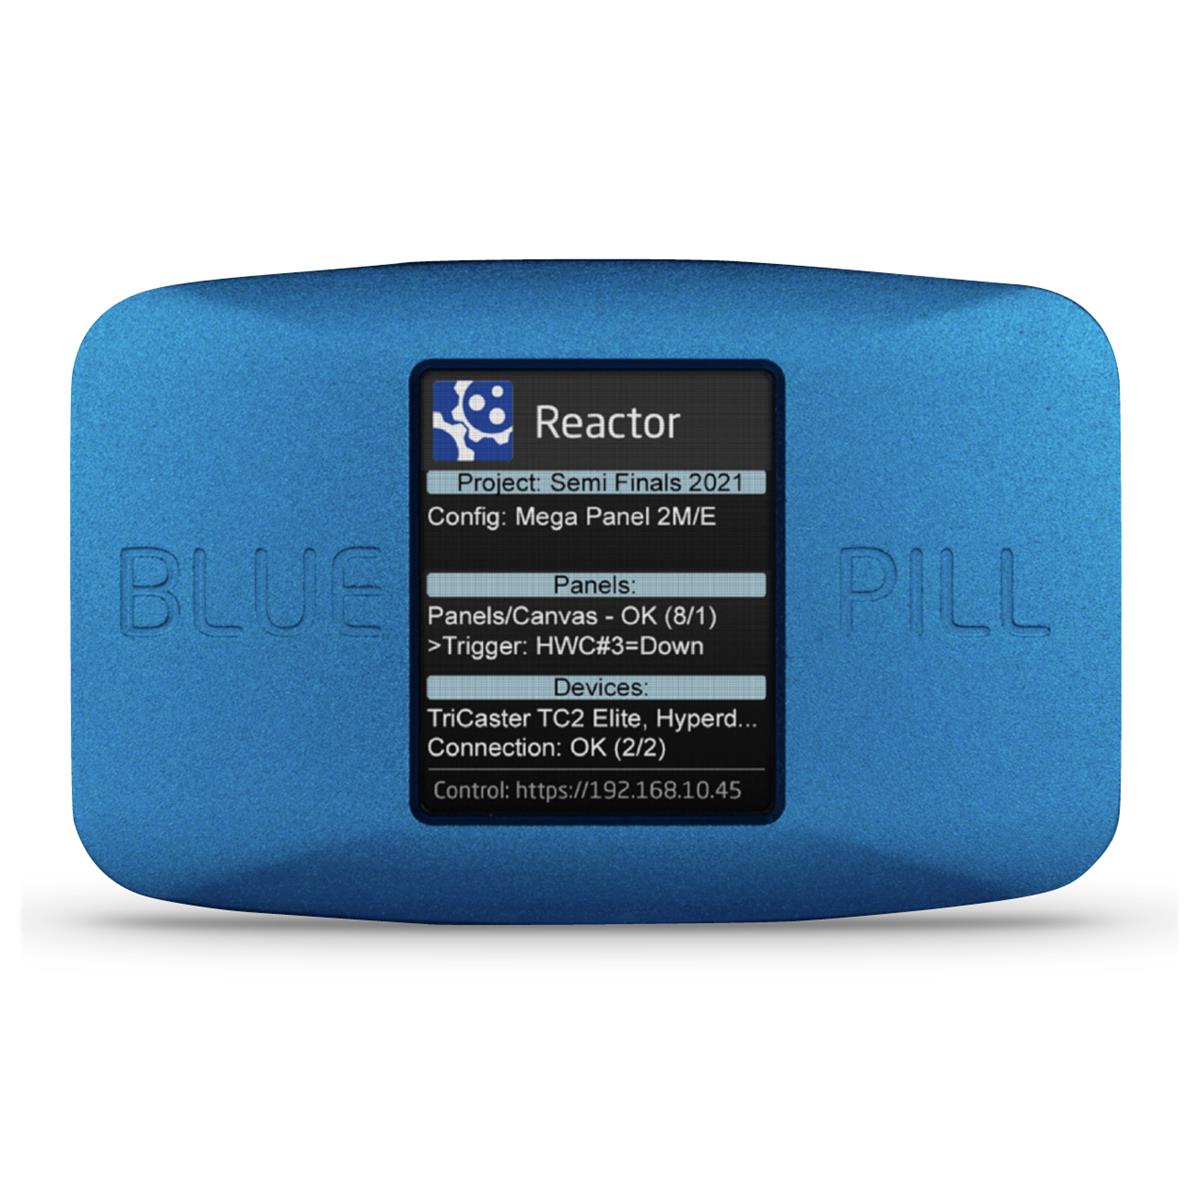 Image of Skaarhoj Blue Pill PoE Network Interface